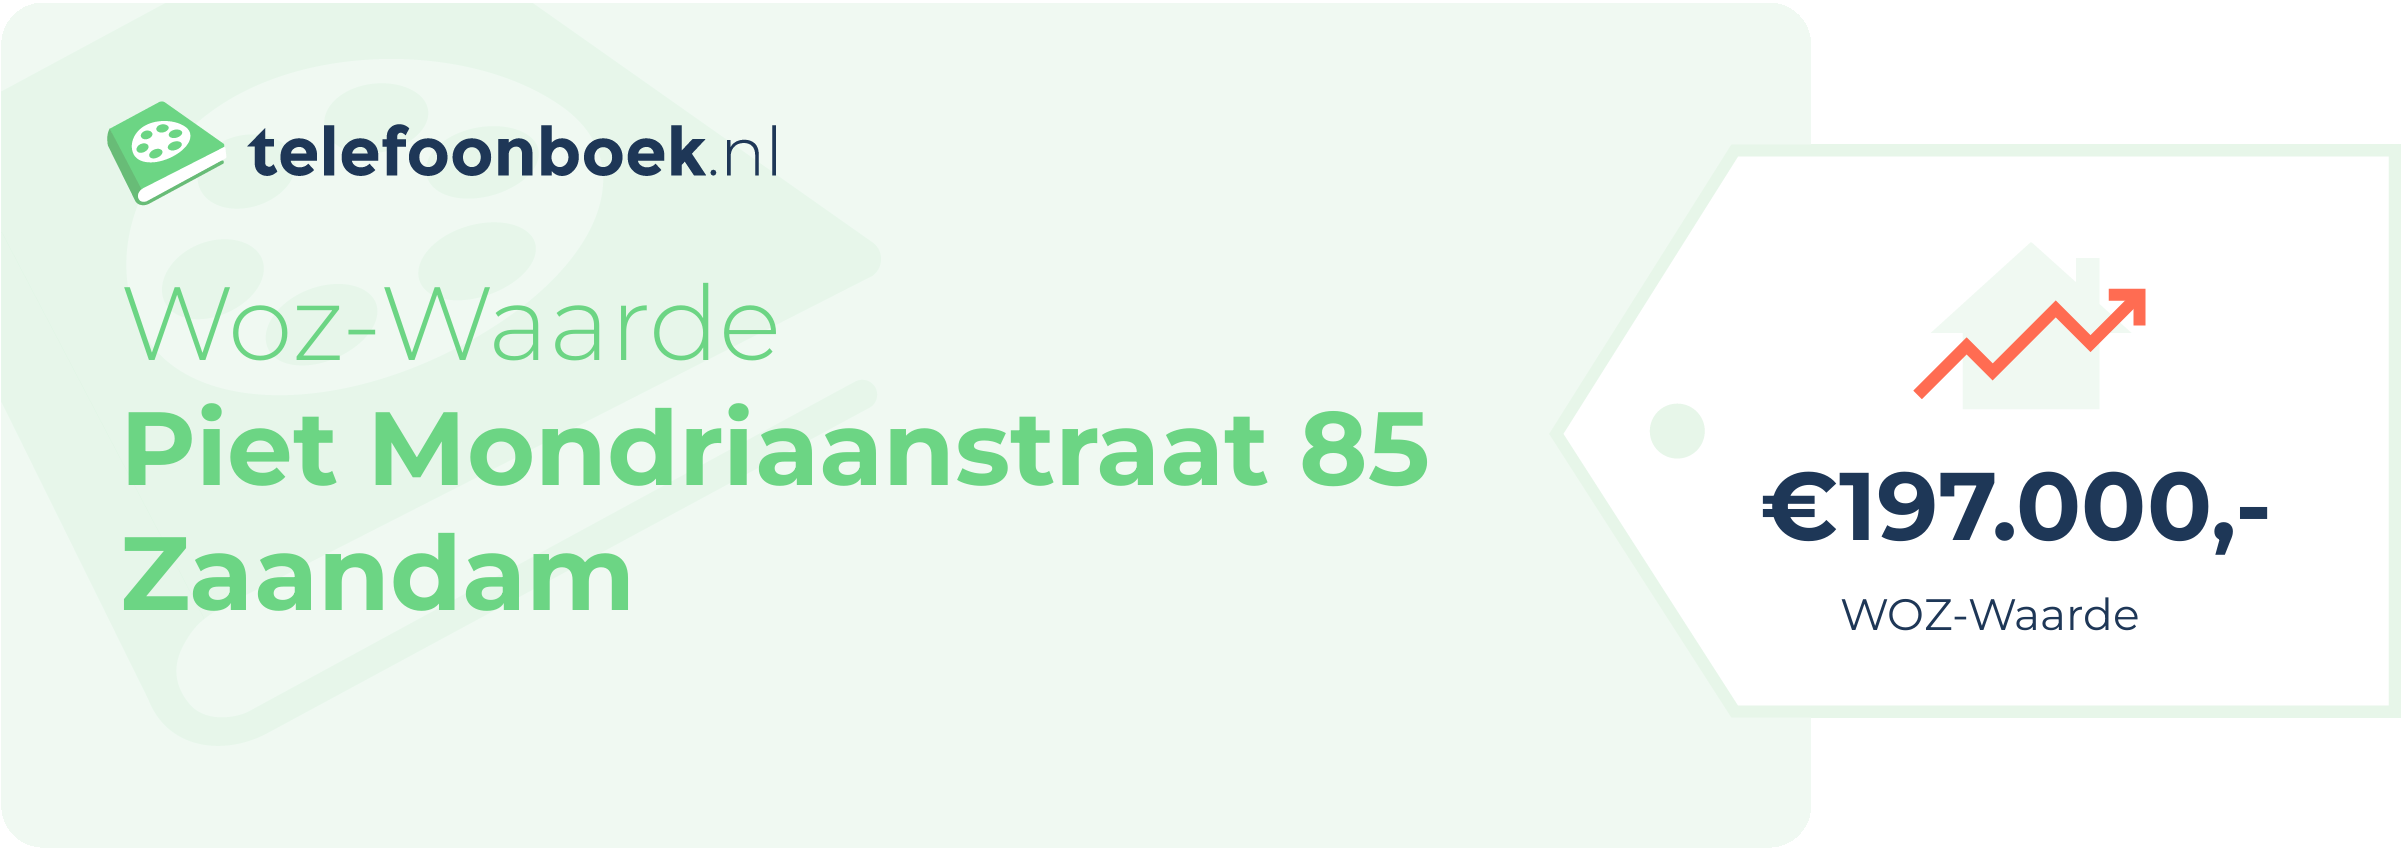 WOZ-waarde Piet Mondriaanstraat 85 Zaandam